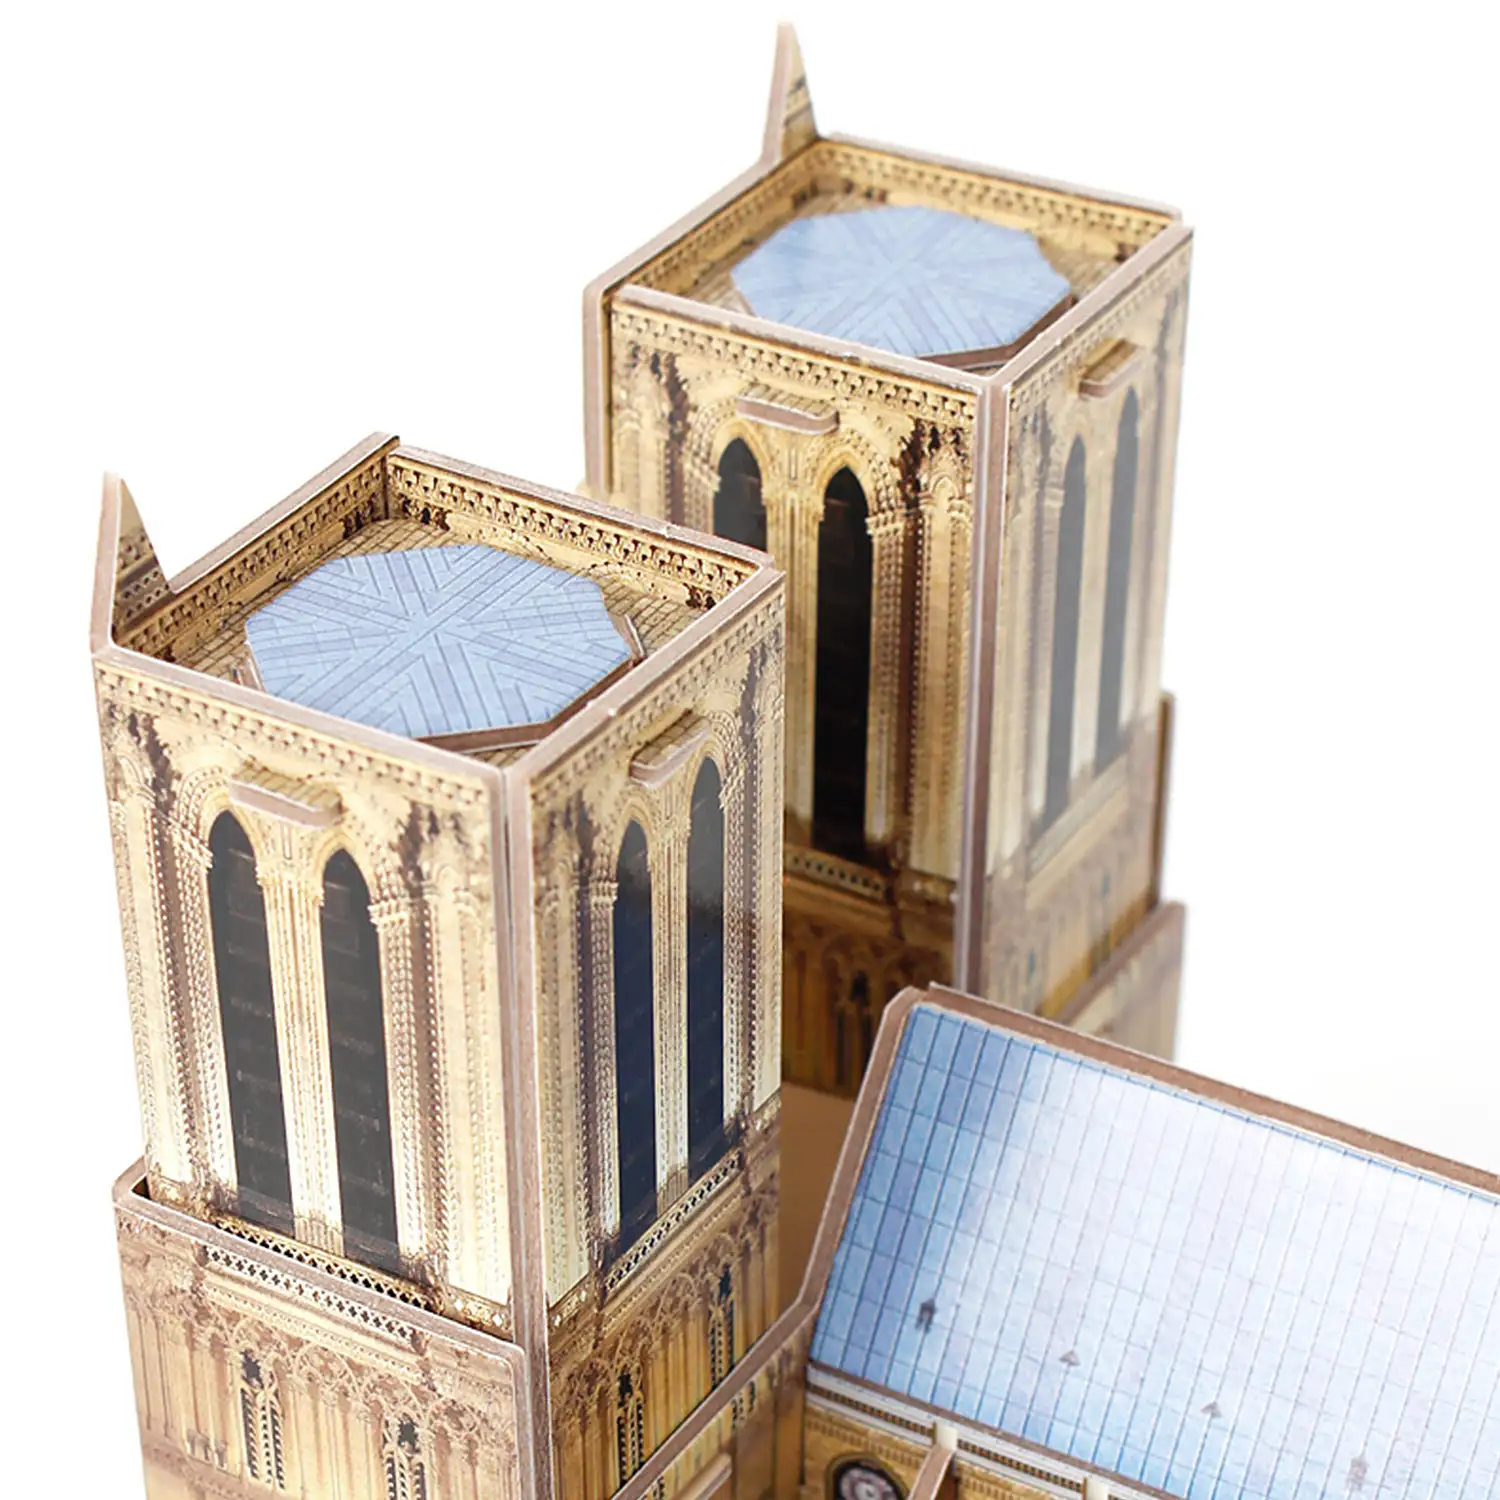 Puzzle 3D Notre Dame París 27,2x14,2x18 cm.